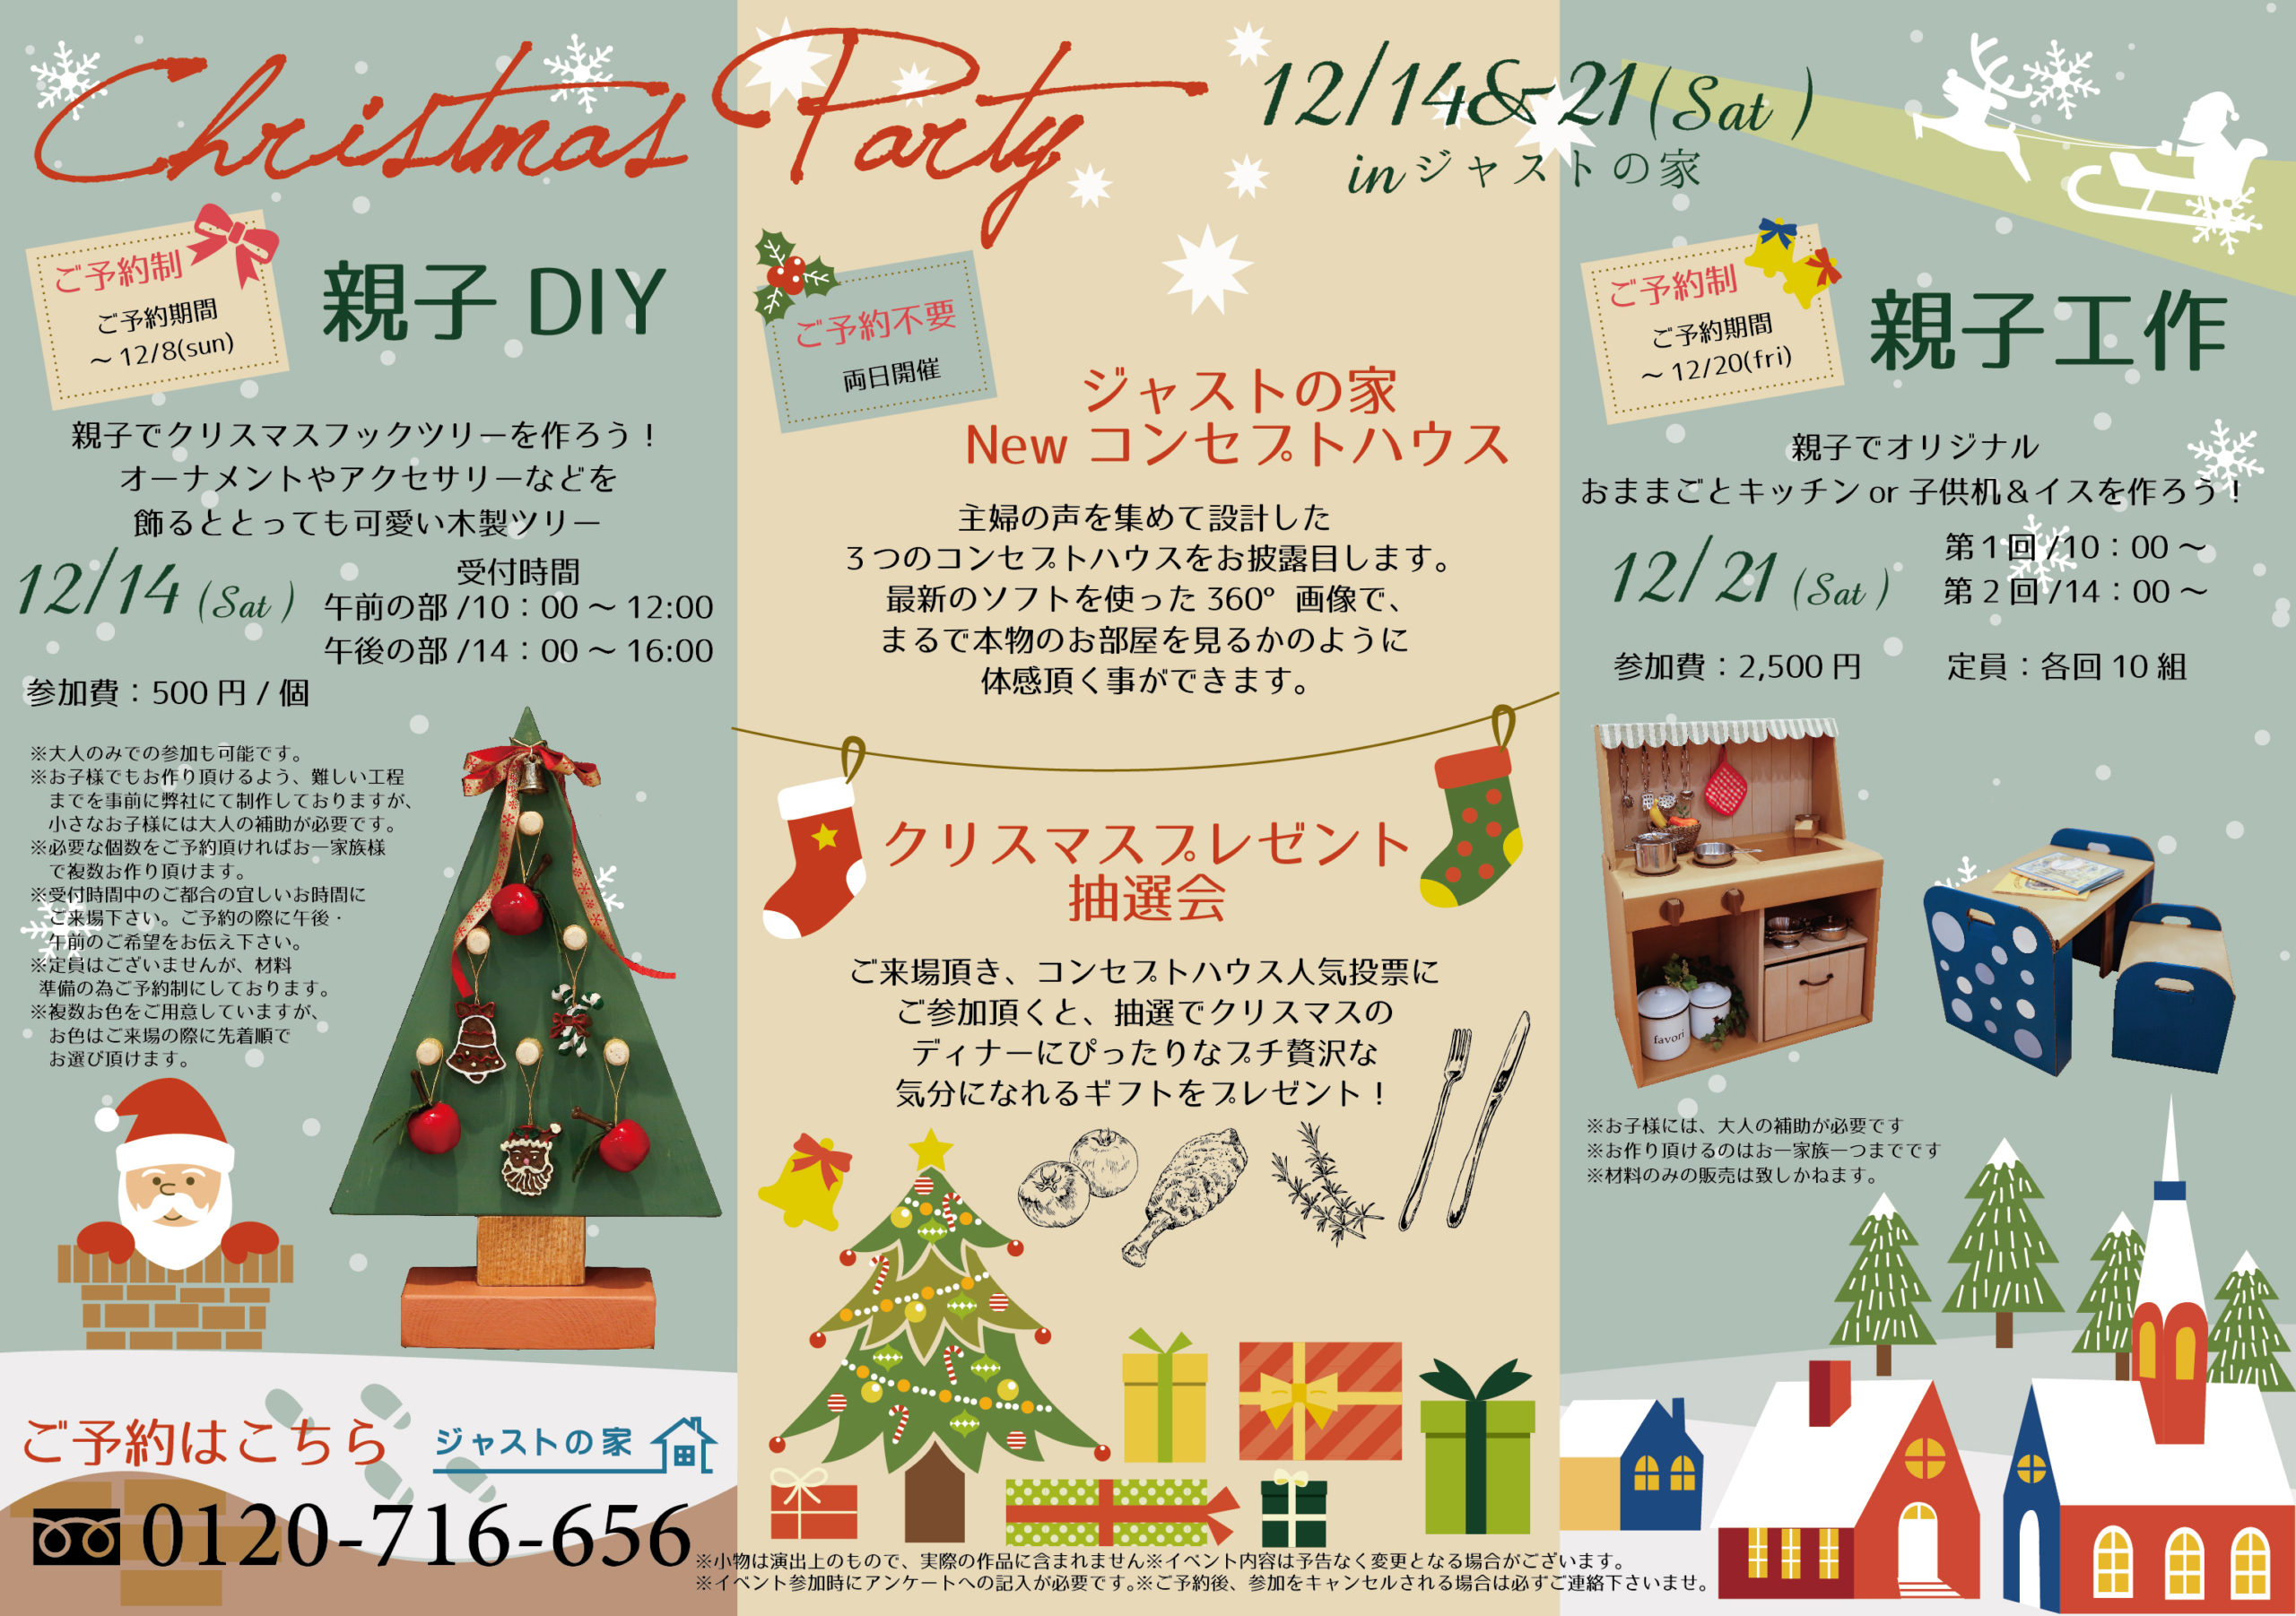 ジャストの家 クリスマスパーティー イベント お知らせ 愛知県日進市で注文住宅を建てるジャストの家